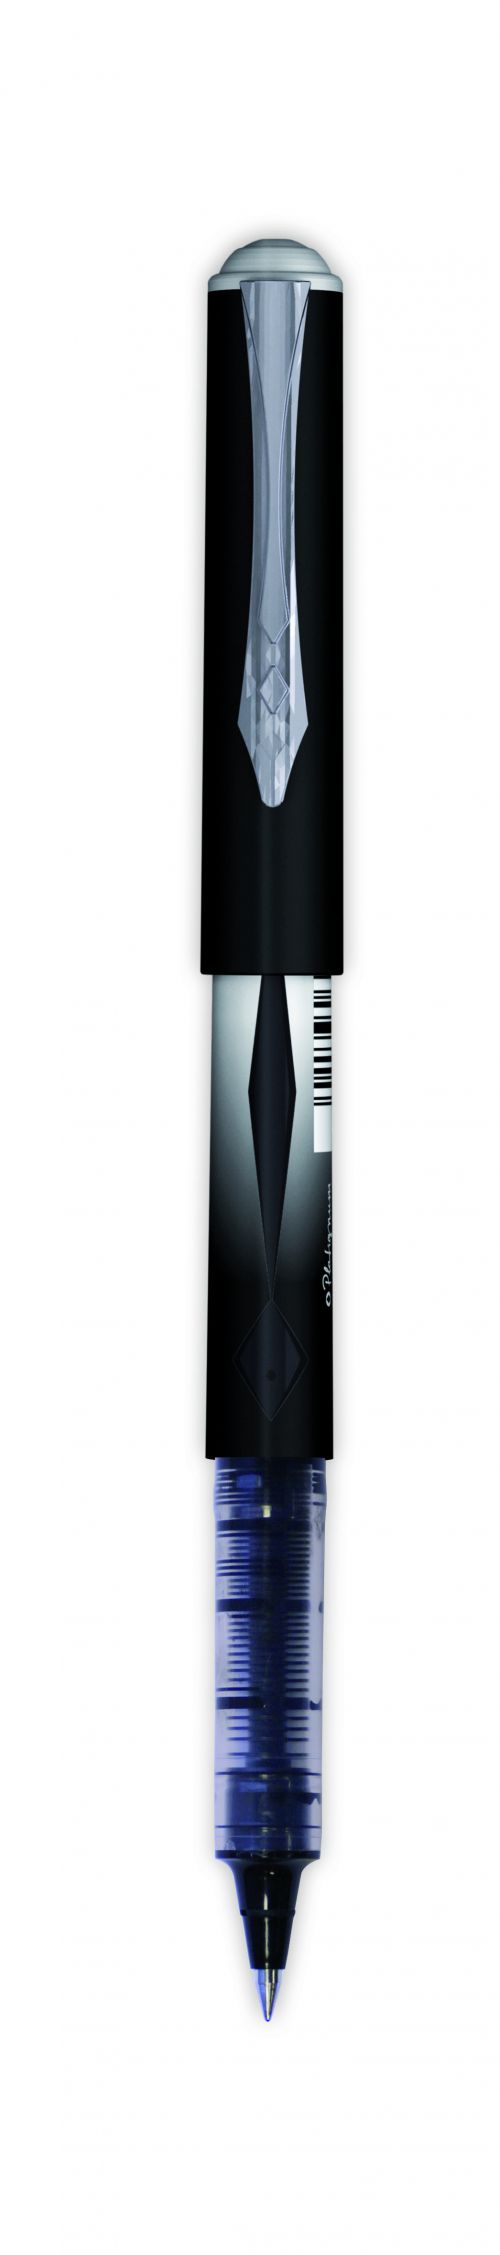 Snopake Tixx Rollerball Pen Cone Point Medium 0.5mm Black 50458 -SINGLE Pen